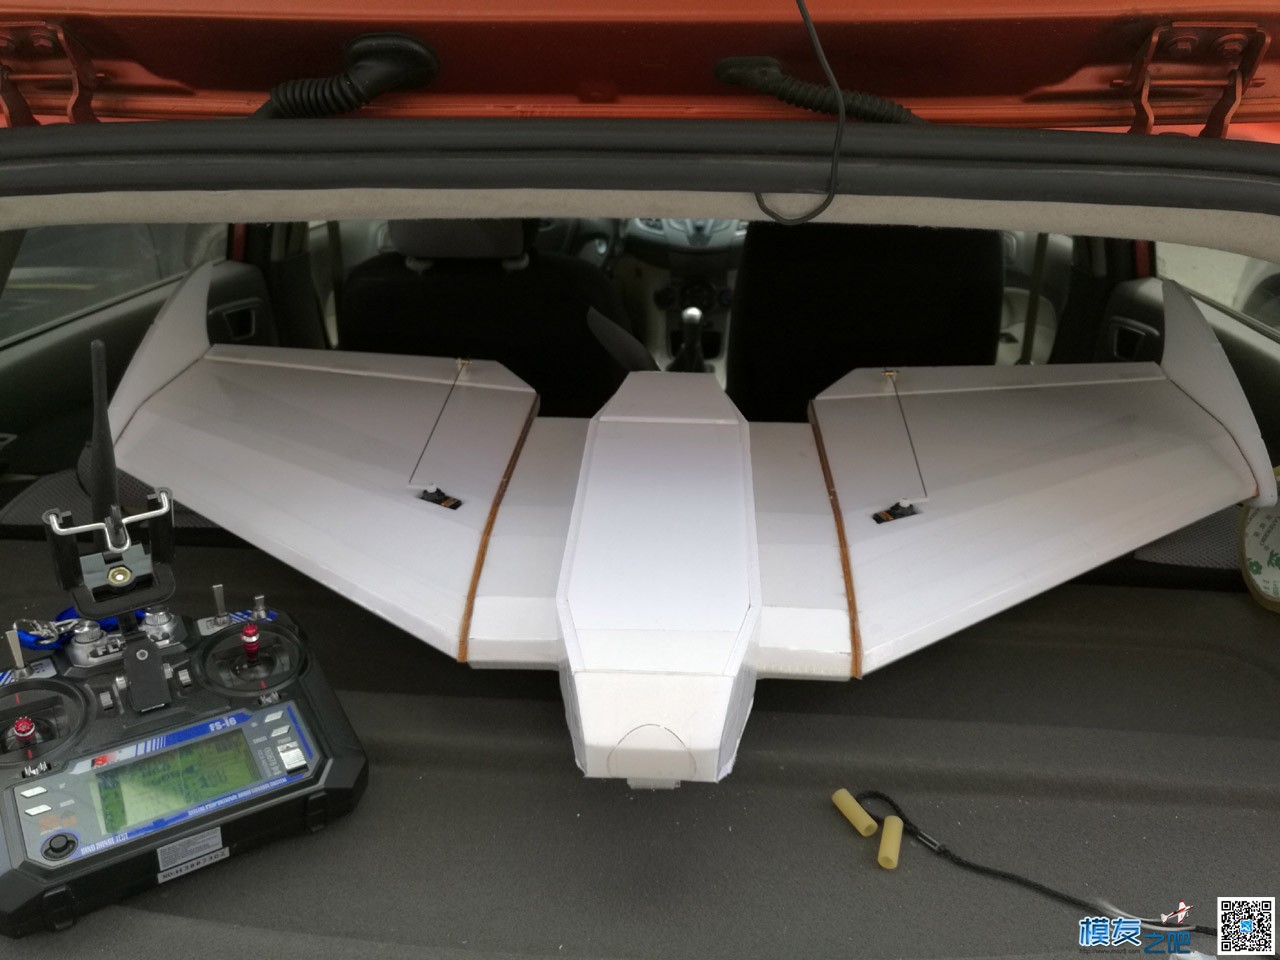 KT-780飞翼制作-3-电装设备组合 图纸,飞翼,电装vk22,nwb和电装,什么是电装 作者:peter33 9118 